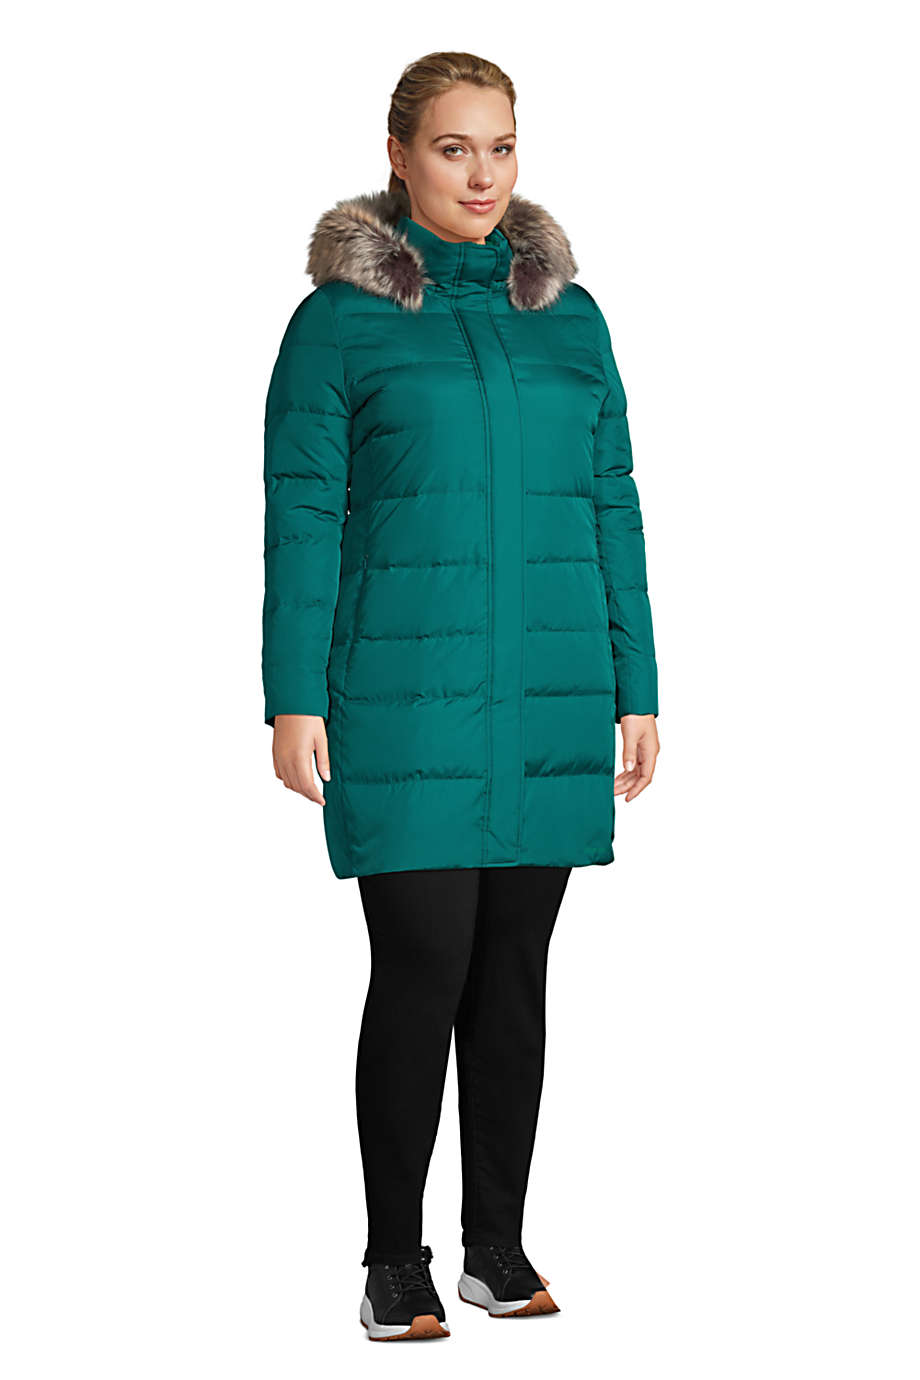 Lands' End Women's Plus Size Winter Long Down Coat with Faux Fur Hood